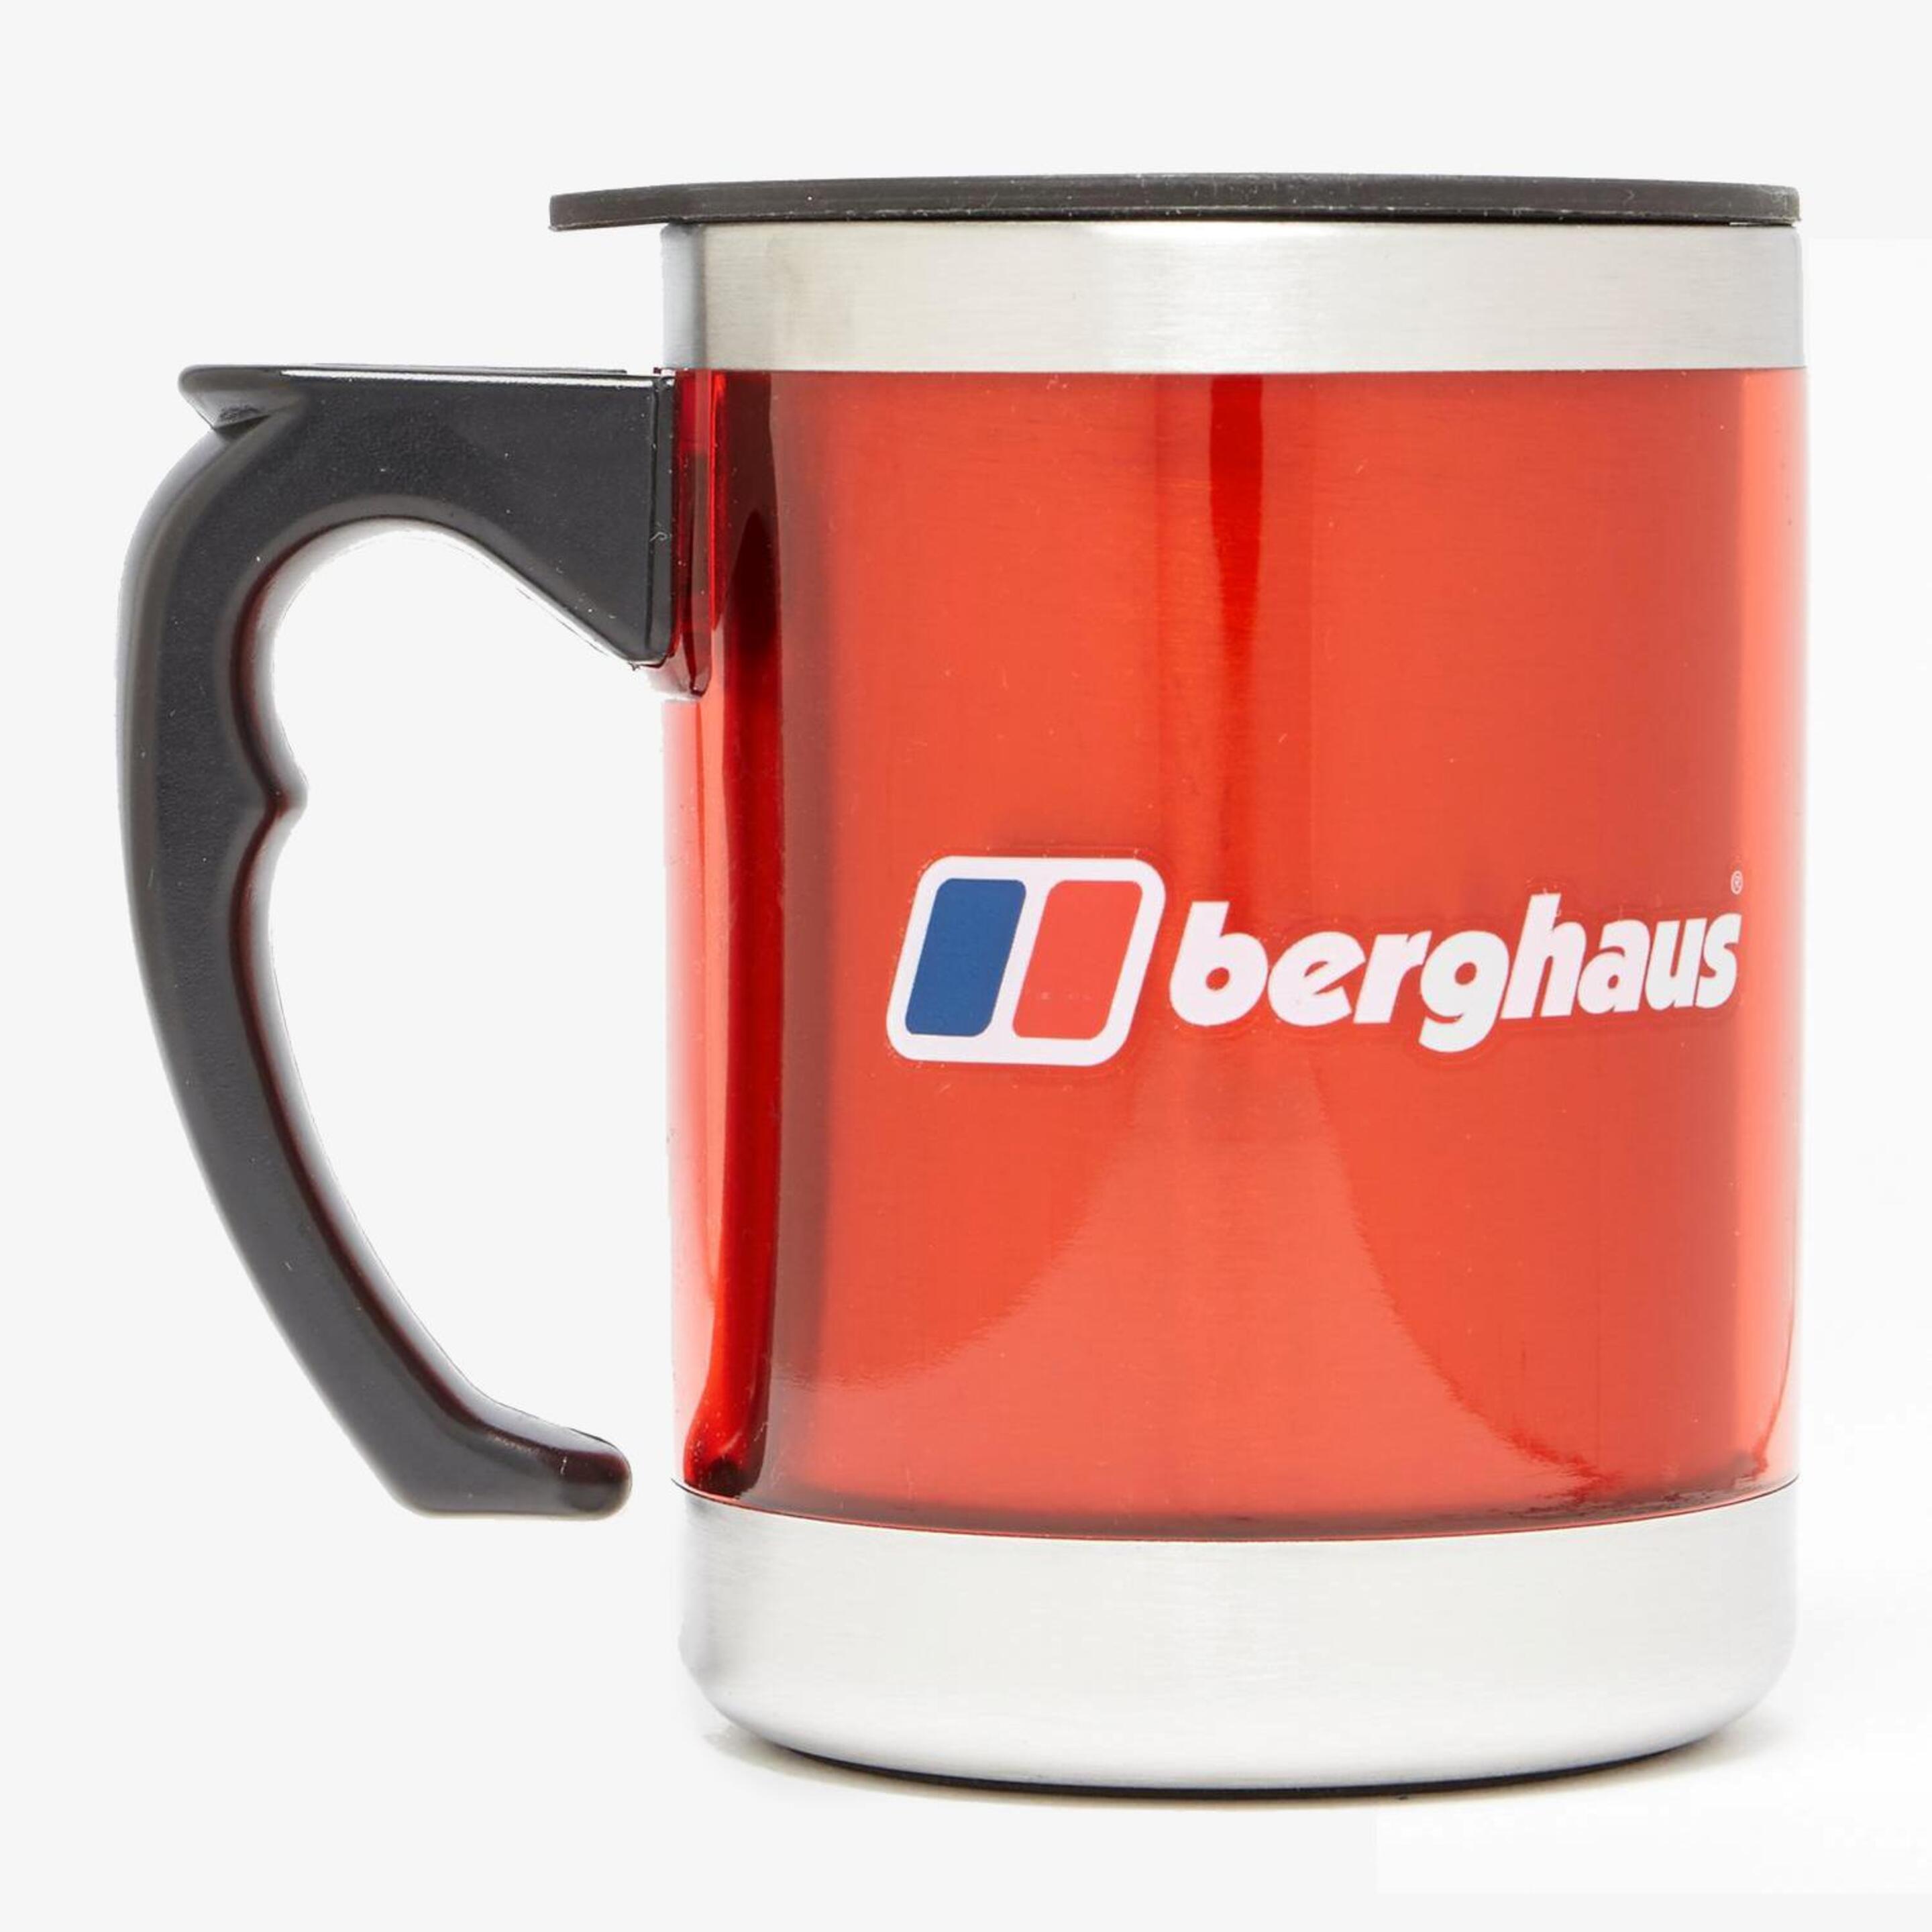 Berghaus Camping Mug